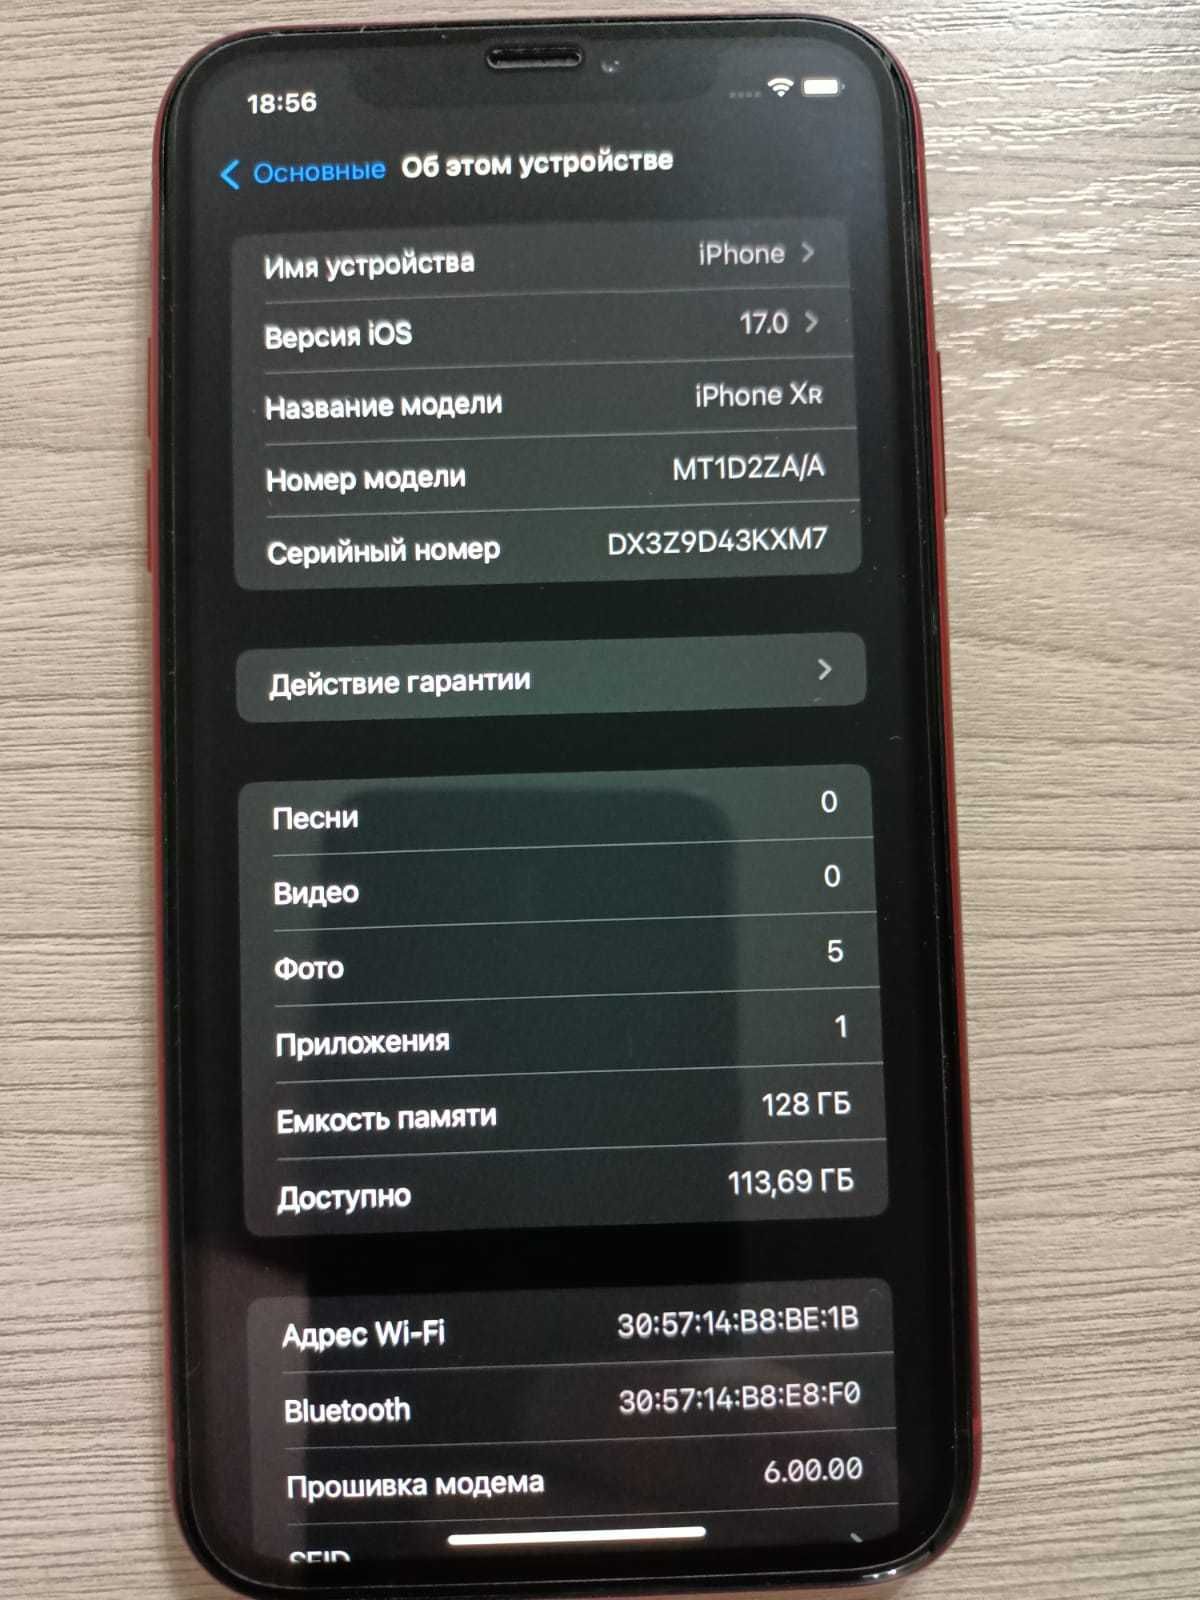 Продам б/у iPhone XR красного цвета на 128ГБ в отличном состоянии!